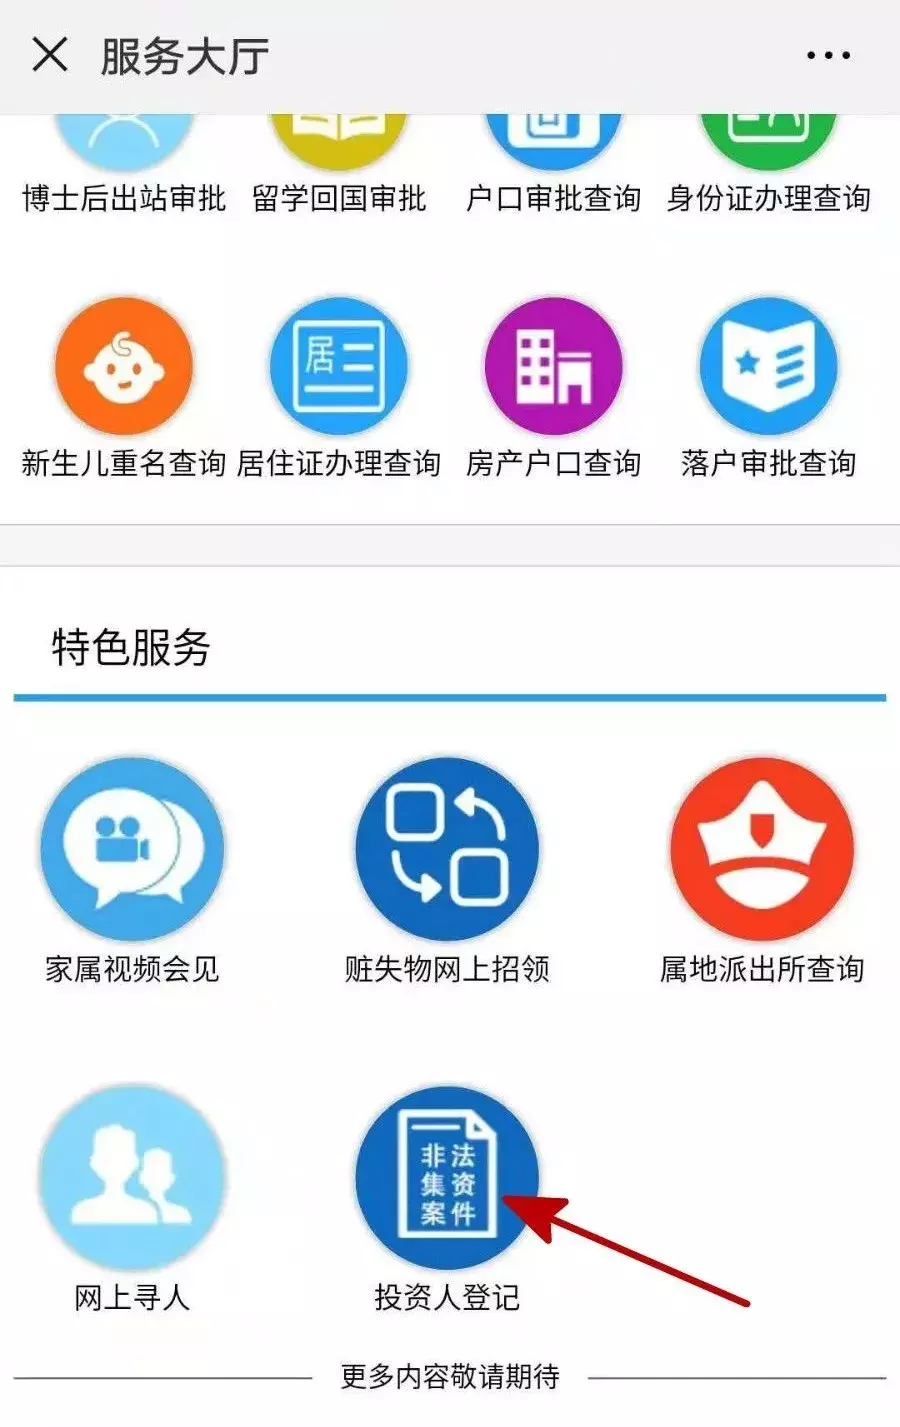 赶紧去登记！上海开通“非法集资案件投资人信息登记平台”！